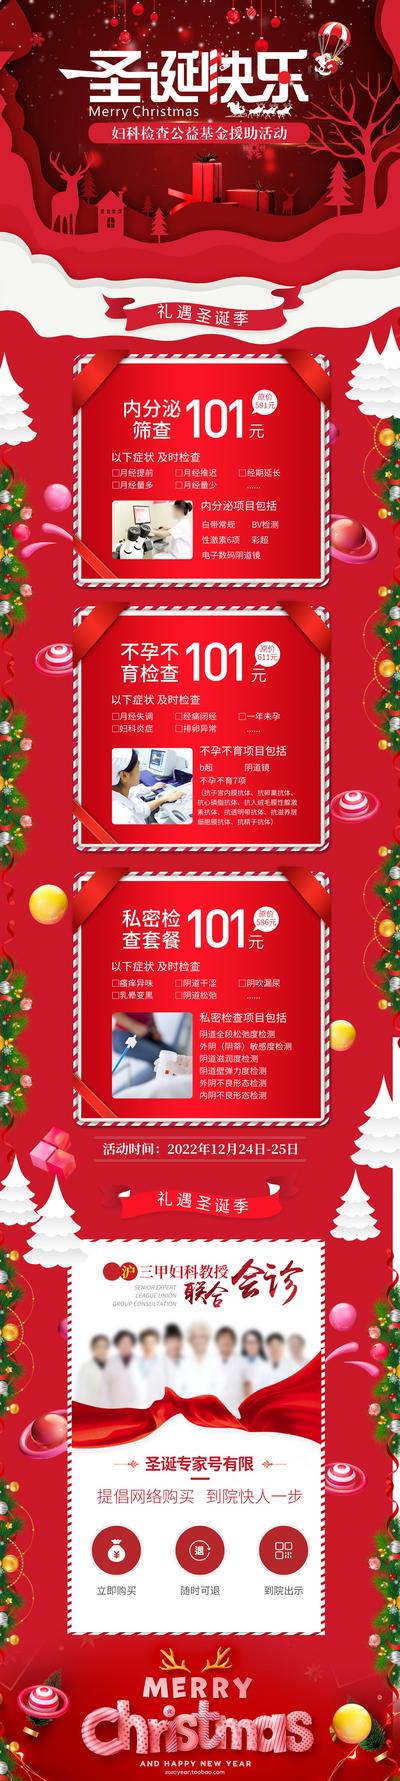 南门网 广告 海报 长图 圣诞节 专题 医美 直播 促销 美容 卡项 圣诞节